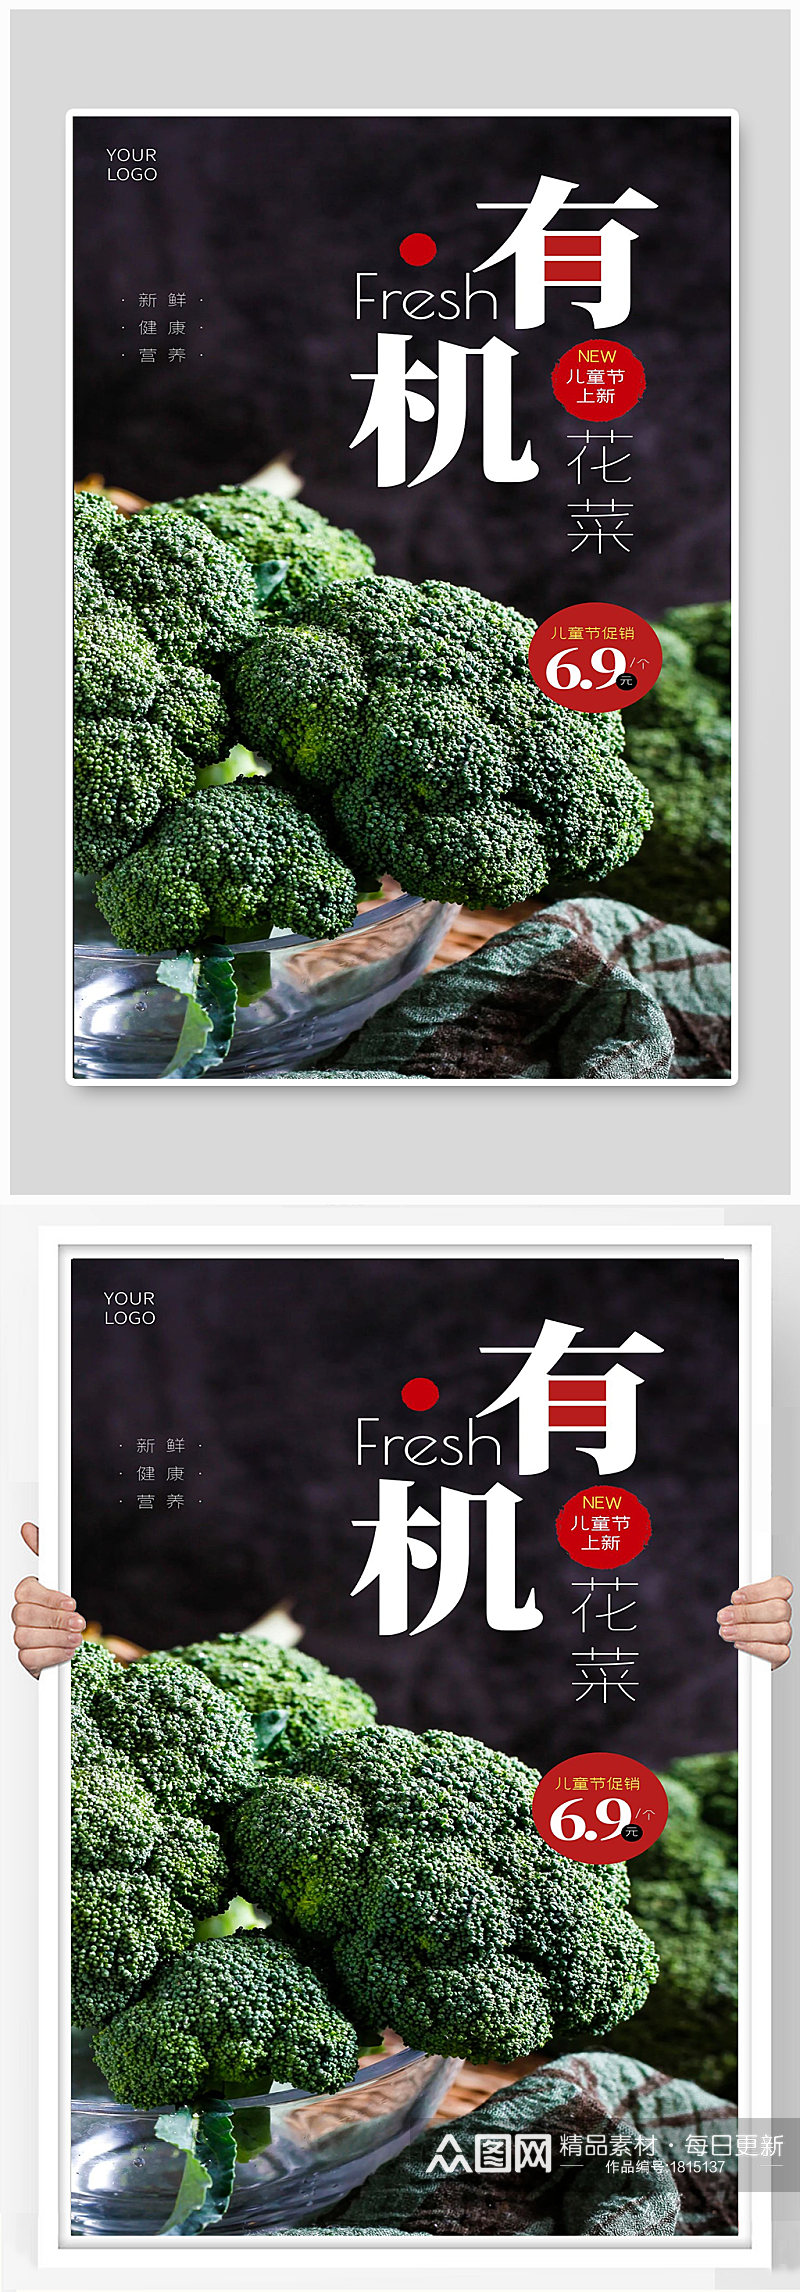 有机绿色蔬菜西兰花宣传海报素材